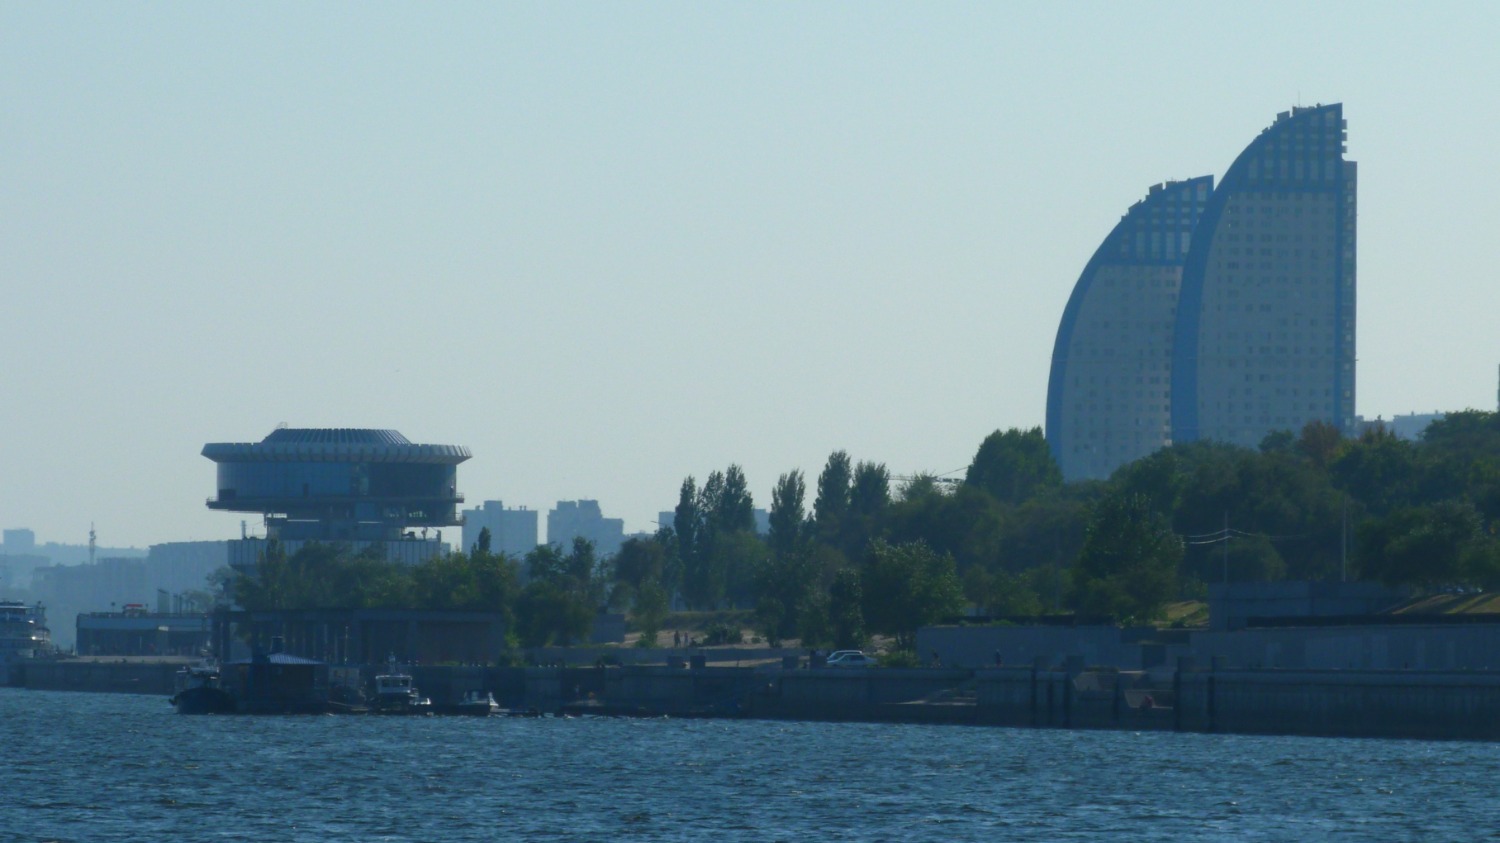 Прогулочные теплоходы отправляются от причалов Центральной набережной Волгограда каждый час